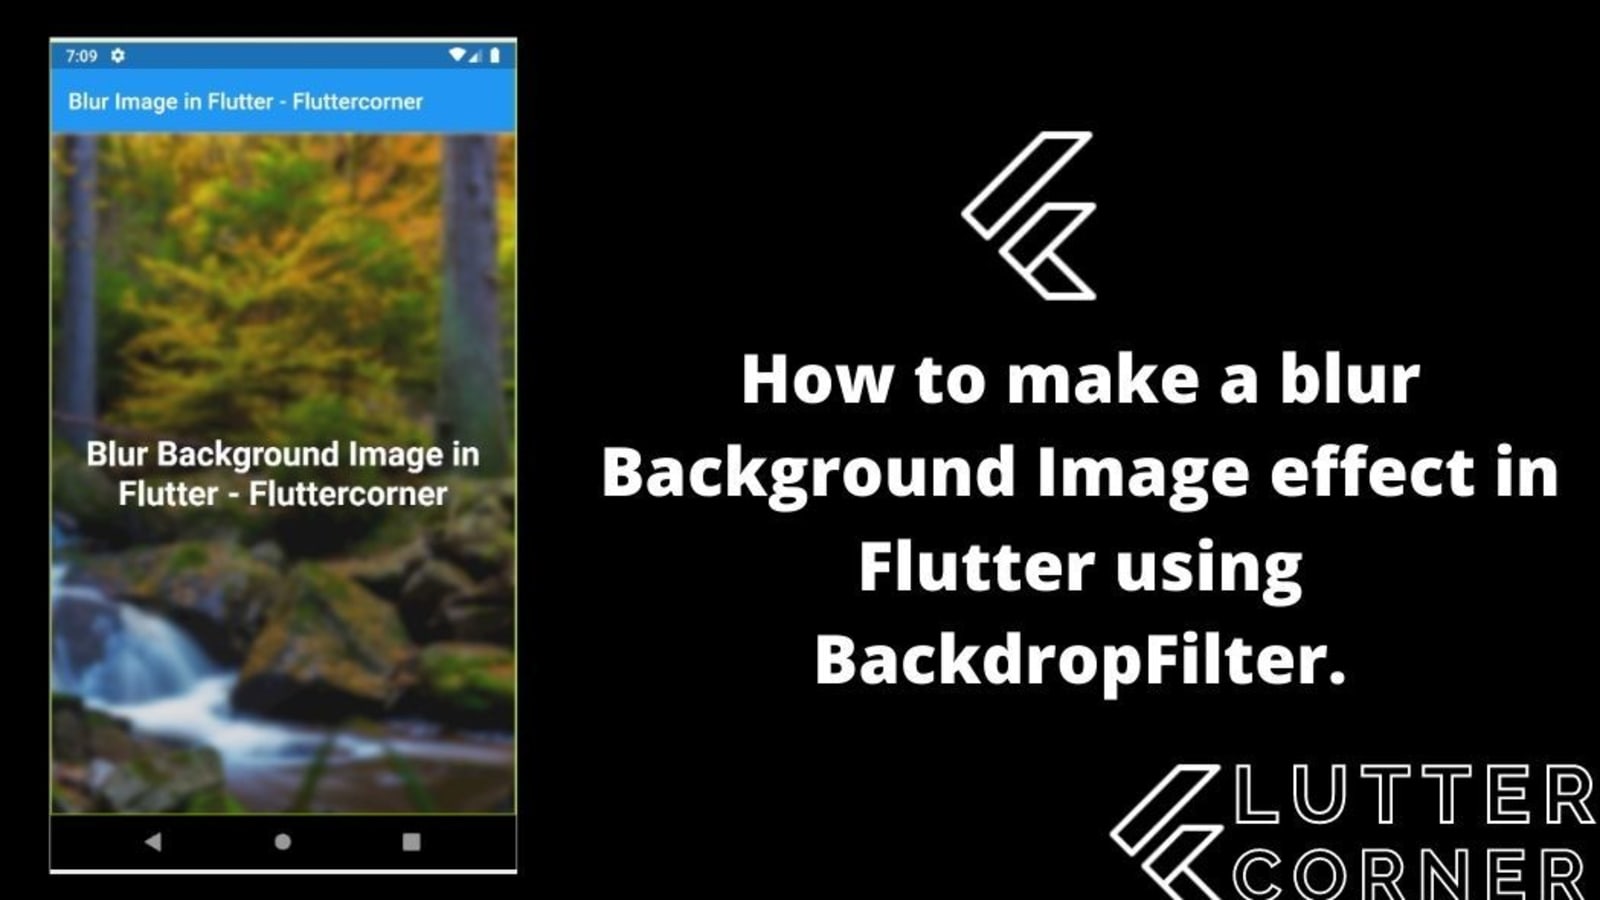 Flutter background image blur mang lại cảm giác đẹp mắt và tạo sự tinh tế cho ứng dụng Flutter. Với chức năng blur, các hình ảnh sẽ chỉnh sửa trên nền tối hay mờ mờ để gây ấn tượng cho người dùng, giúp tăng trải nghiệm của họ. 